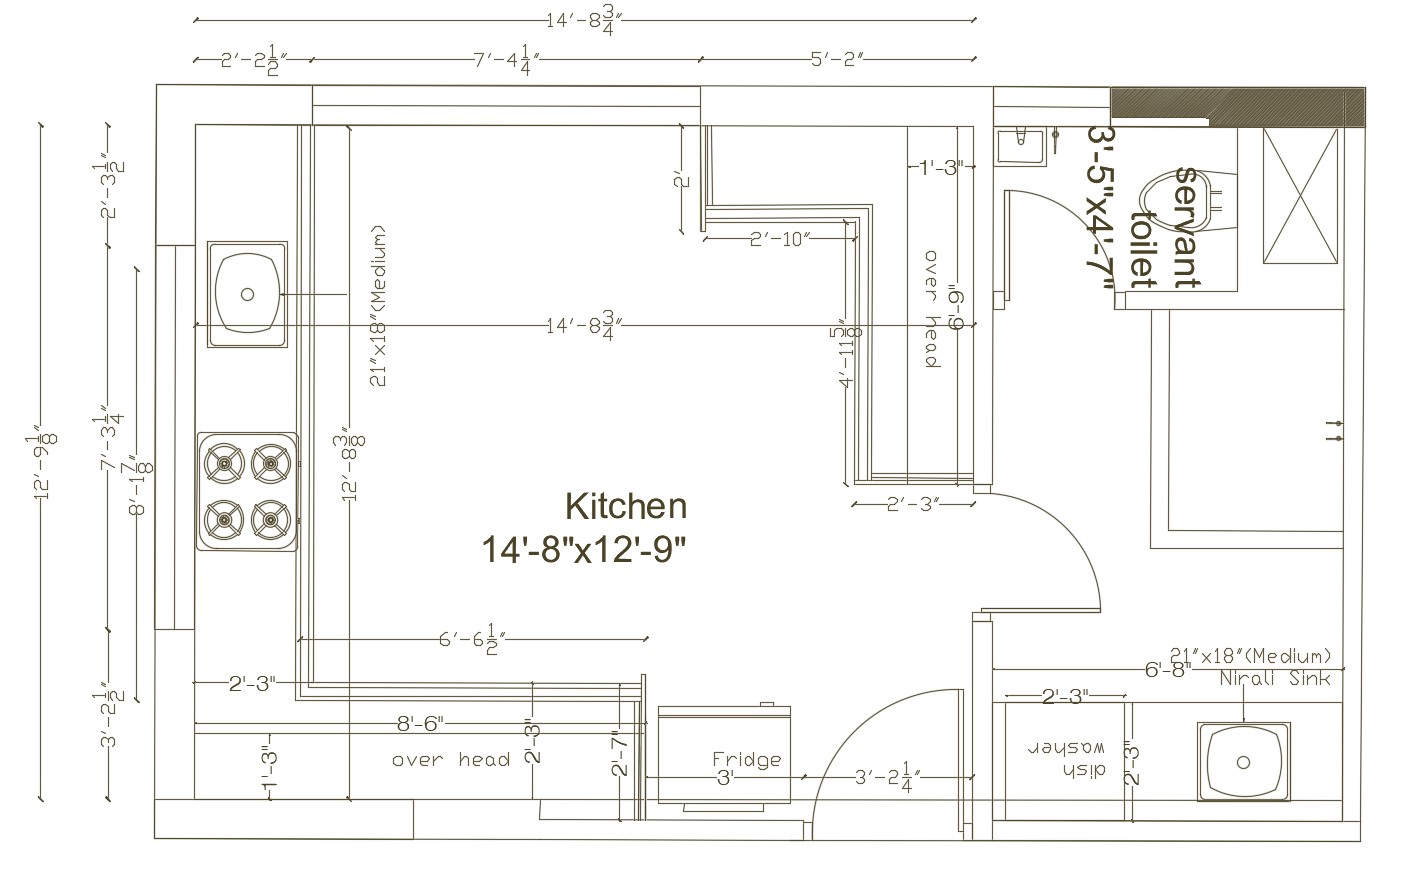 Kitchen layout in autocad - Cadbull